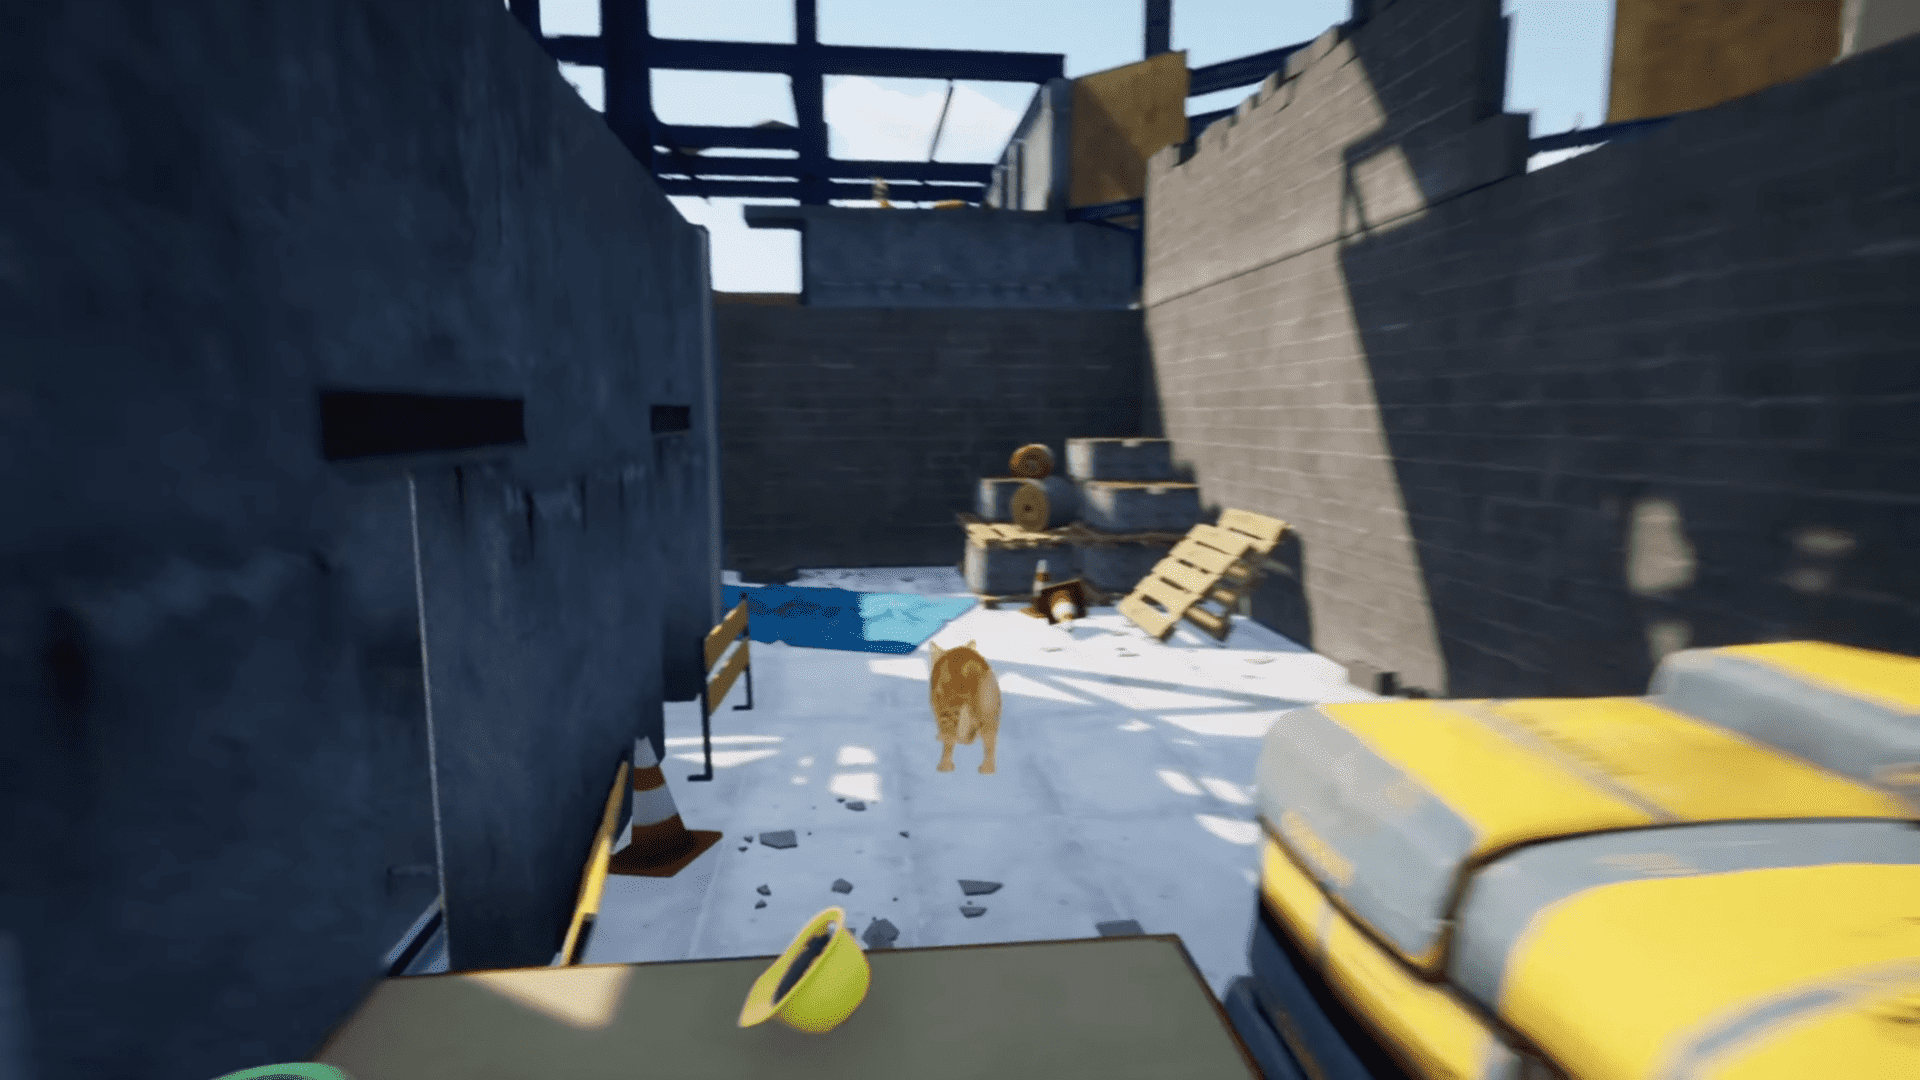 『Only Way is Down』開発中。猫がビルの屋上から地上を目指すゲーム_003